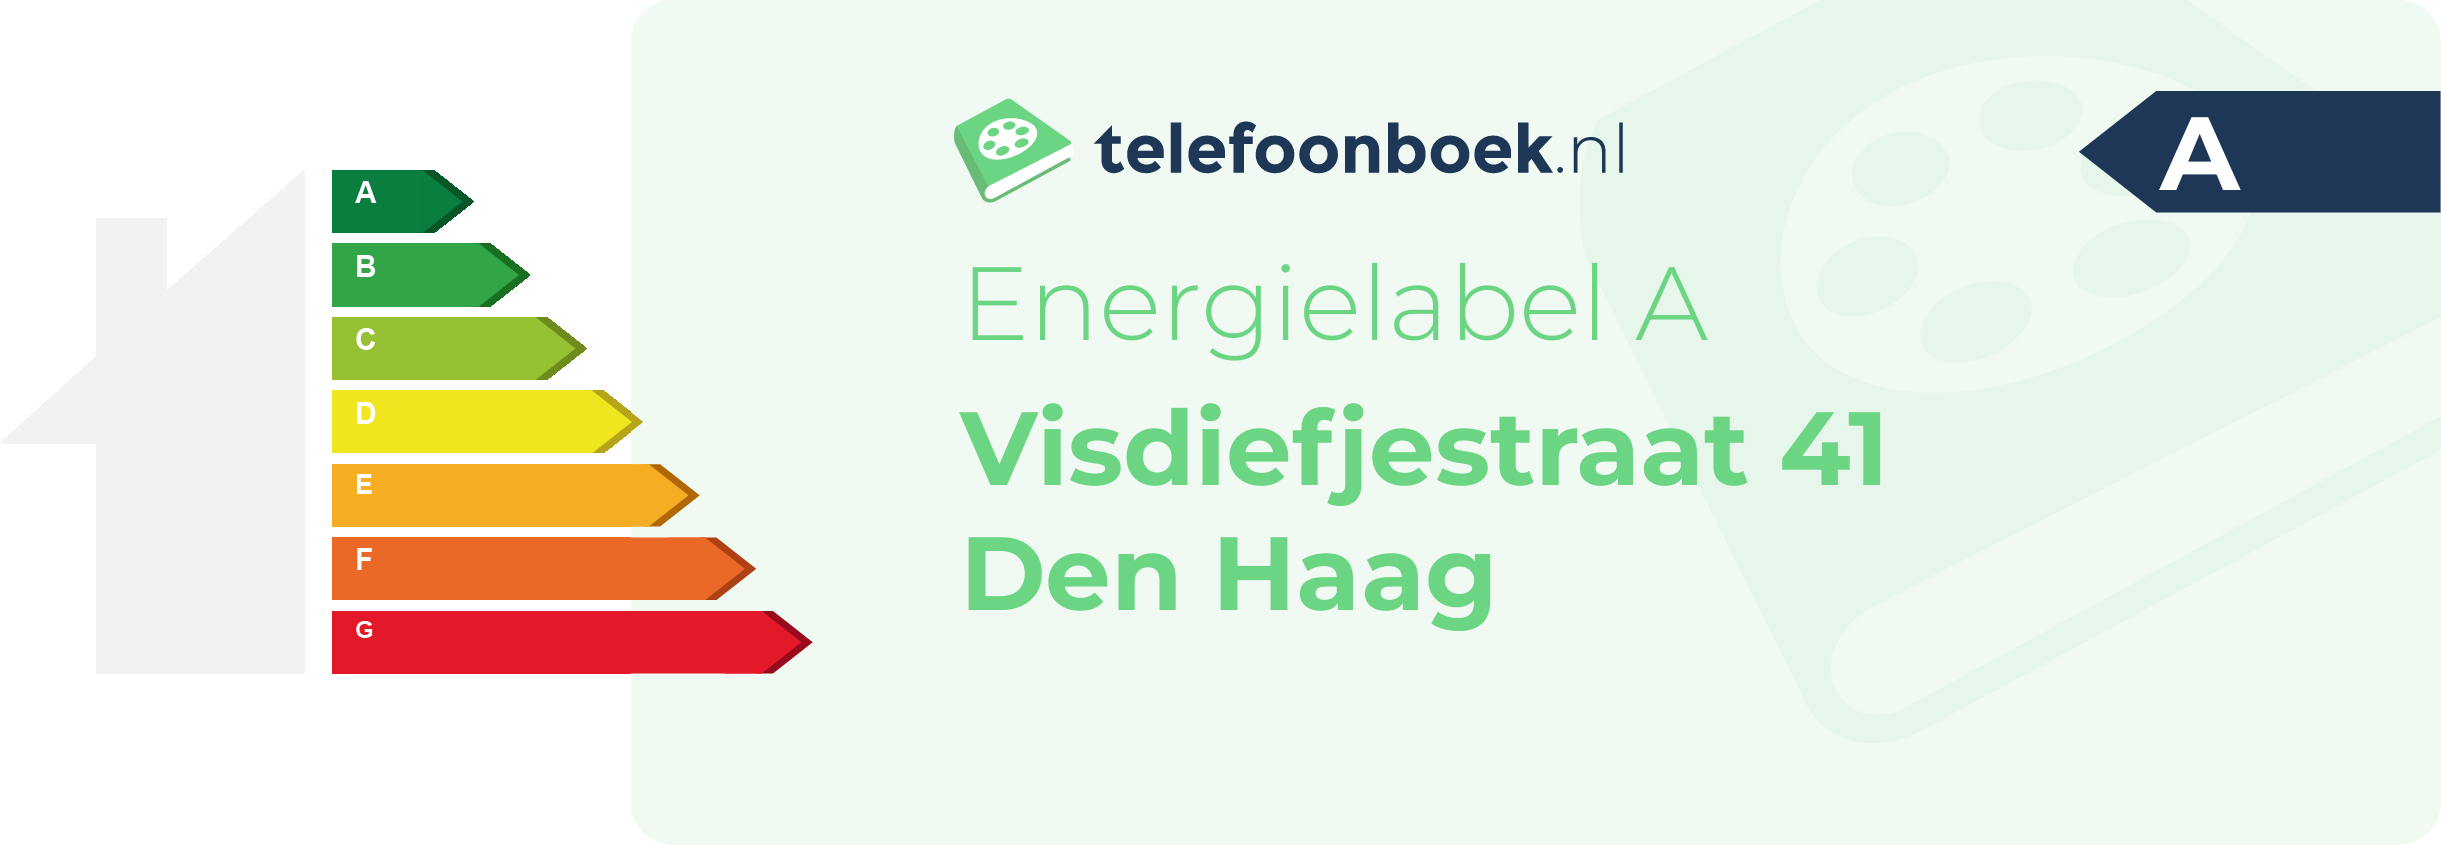 Energielabel Visdiefjestraat 41 Den Haag